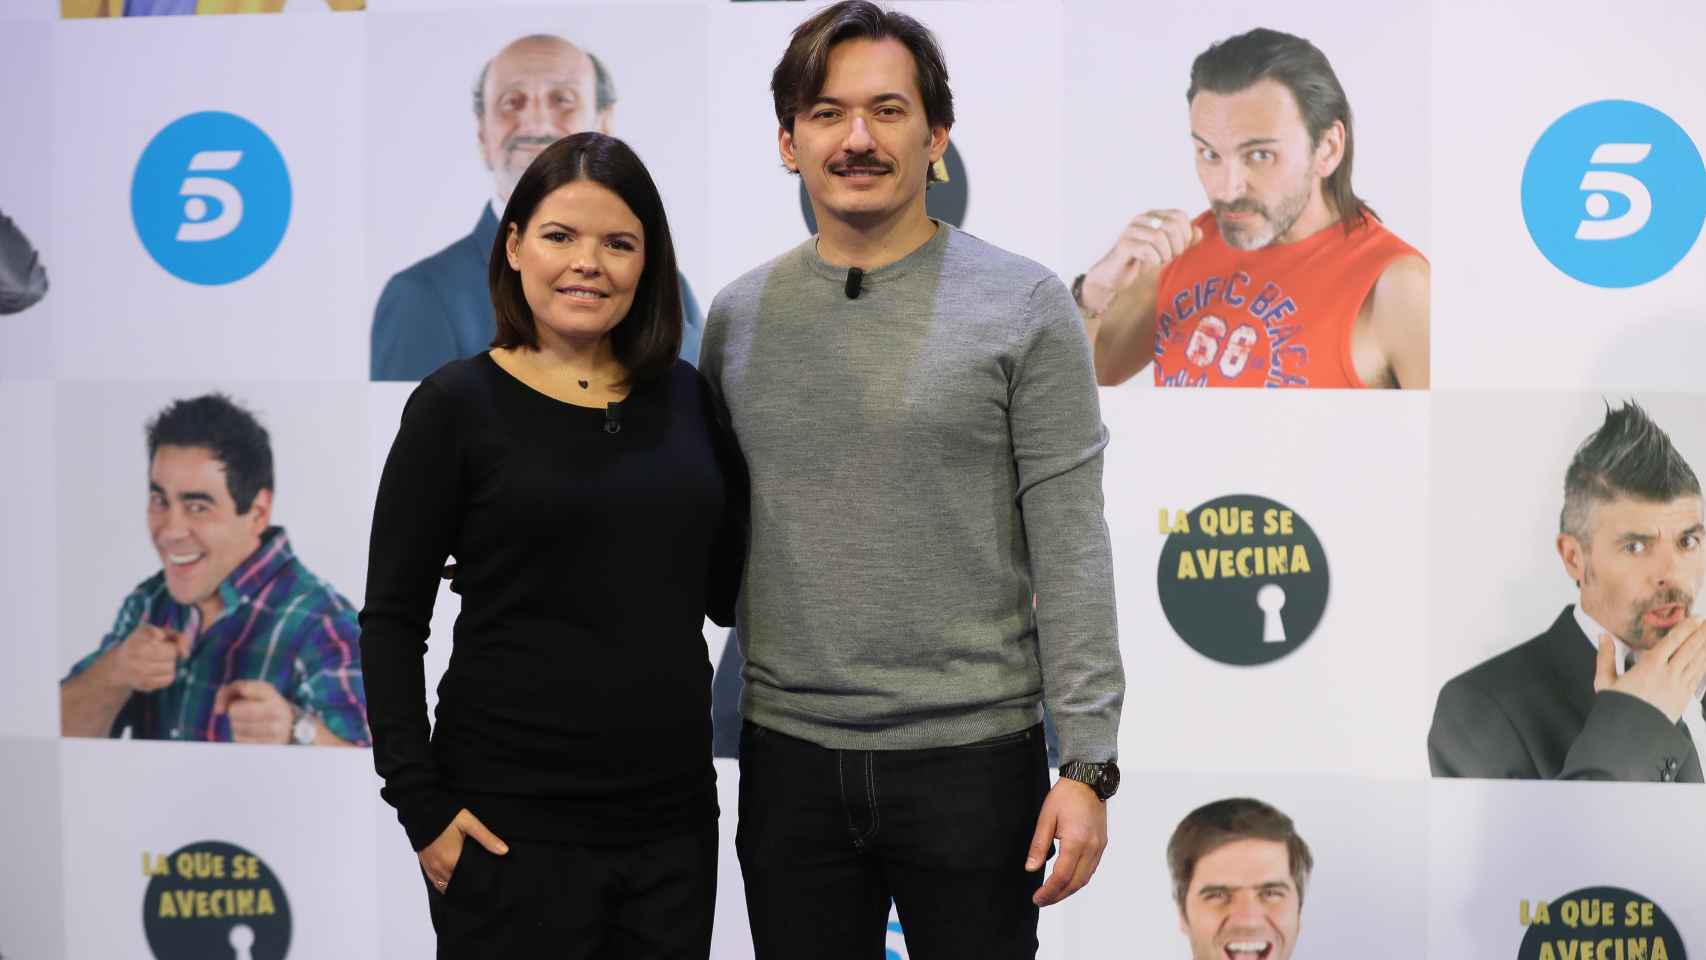 Alberto y Laura Caballero, creadores de 'La que se avecina' y sobrinos del empresario teatral.